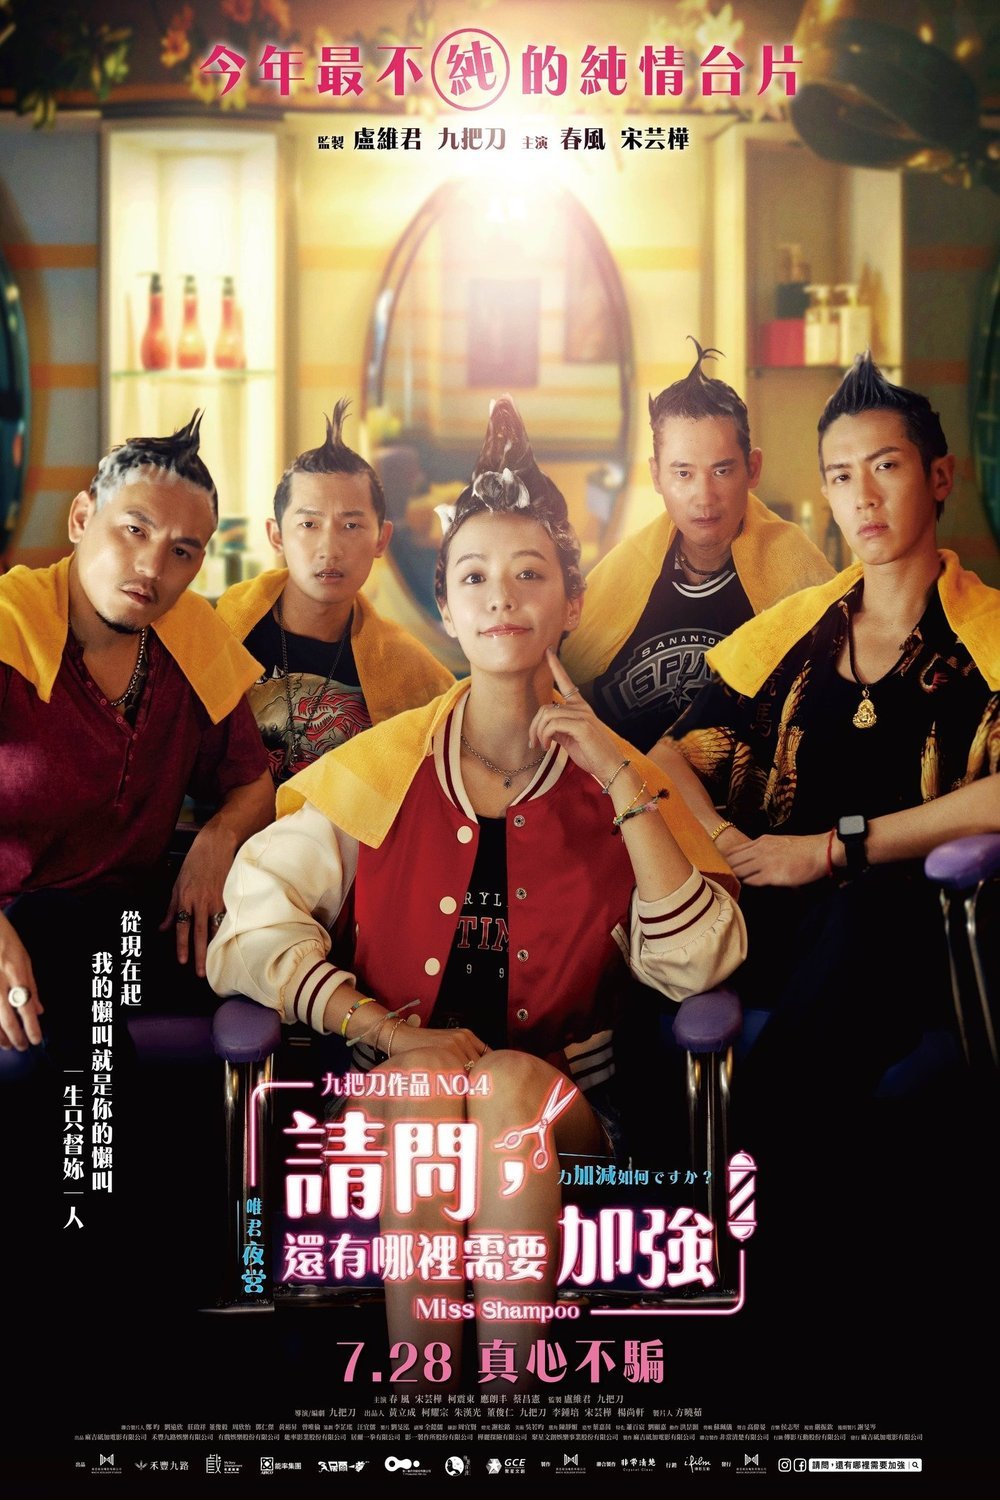 L'affiche originale du film Qing wen hai you na li xu yao jia qiang en mandarin